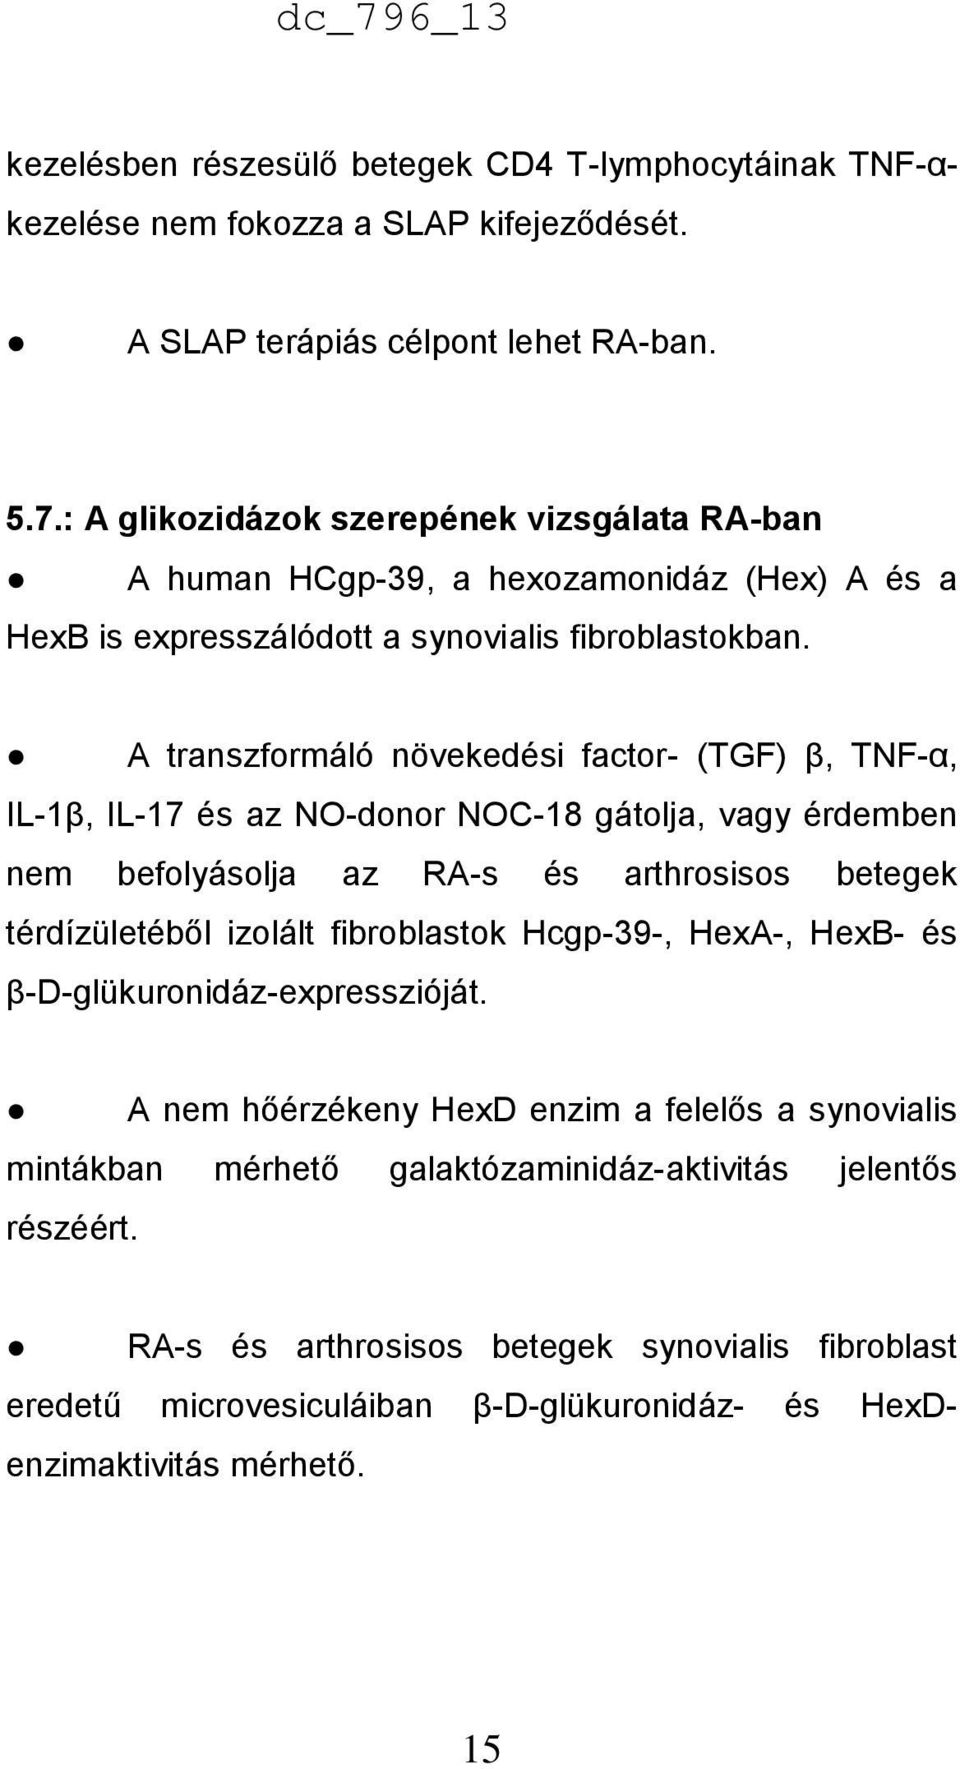 A transzformáló növekedési factor- (TGF) β, TNF-α, IL-1β, IL-17 és az NO-donor NOC-18 gátolja, vagy érdemben nem befolyásolja az RA-s és arthrosisos betegek térdízületéből izolált fibroblastok